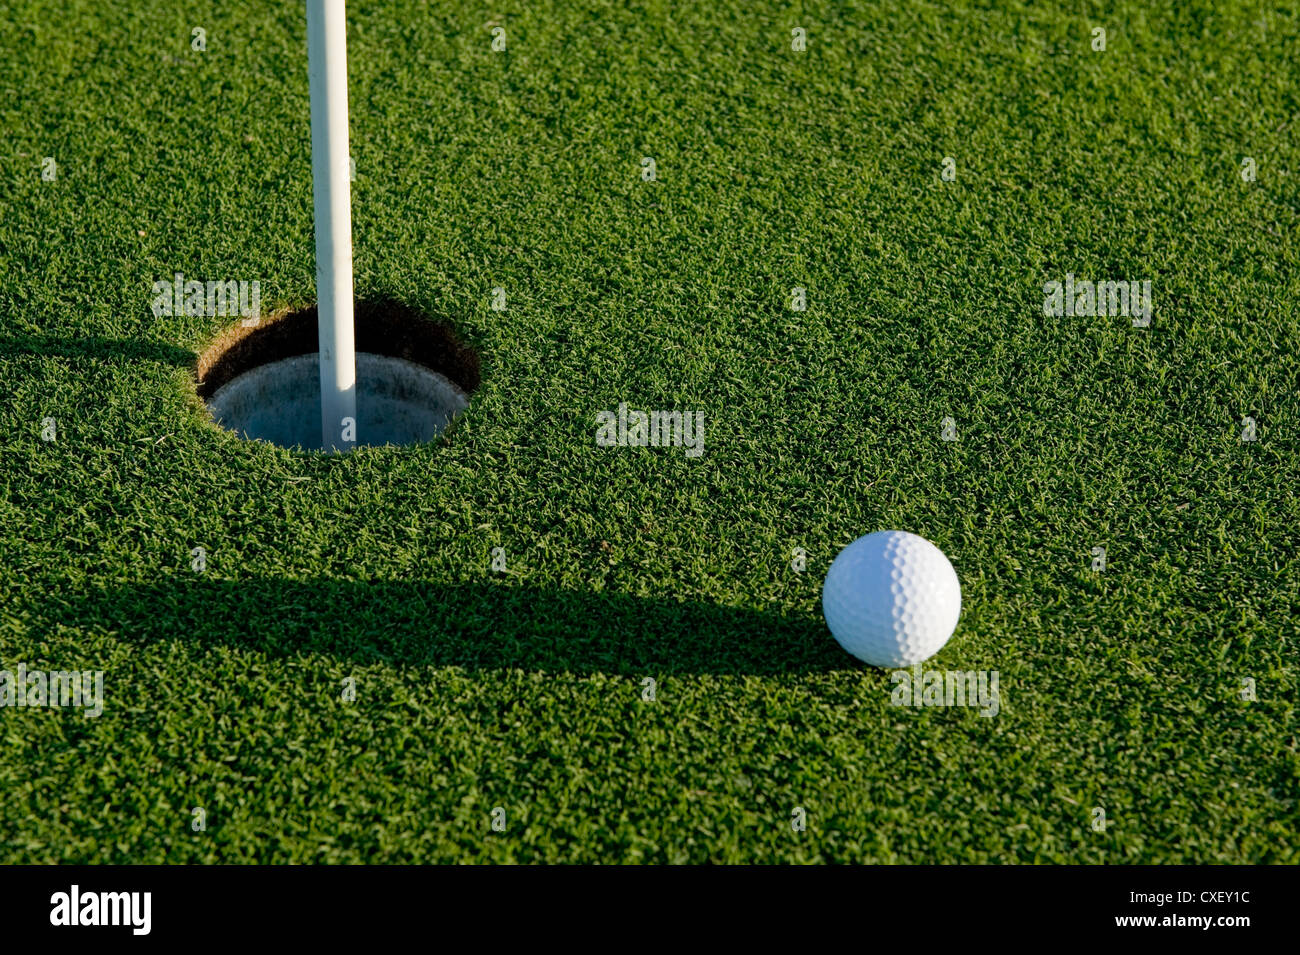 Un corto putt nel gioco del golf su un putting green con una pallina da golf  Foto stock - Alamy